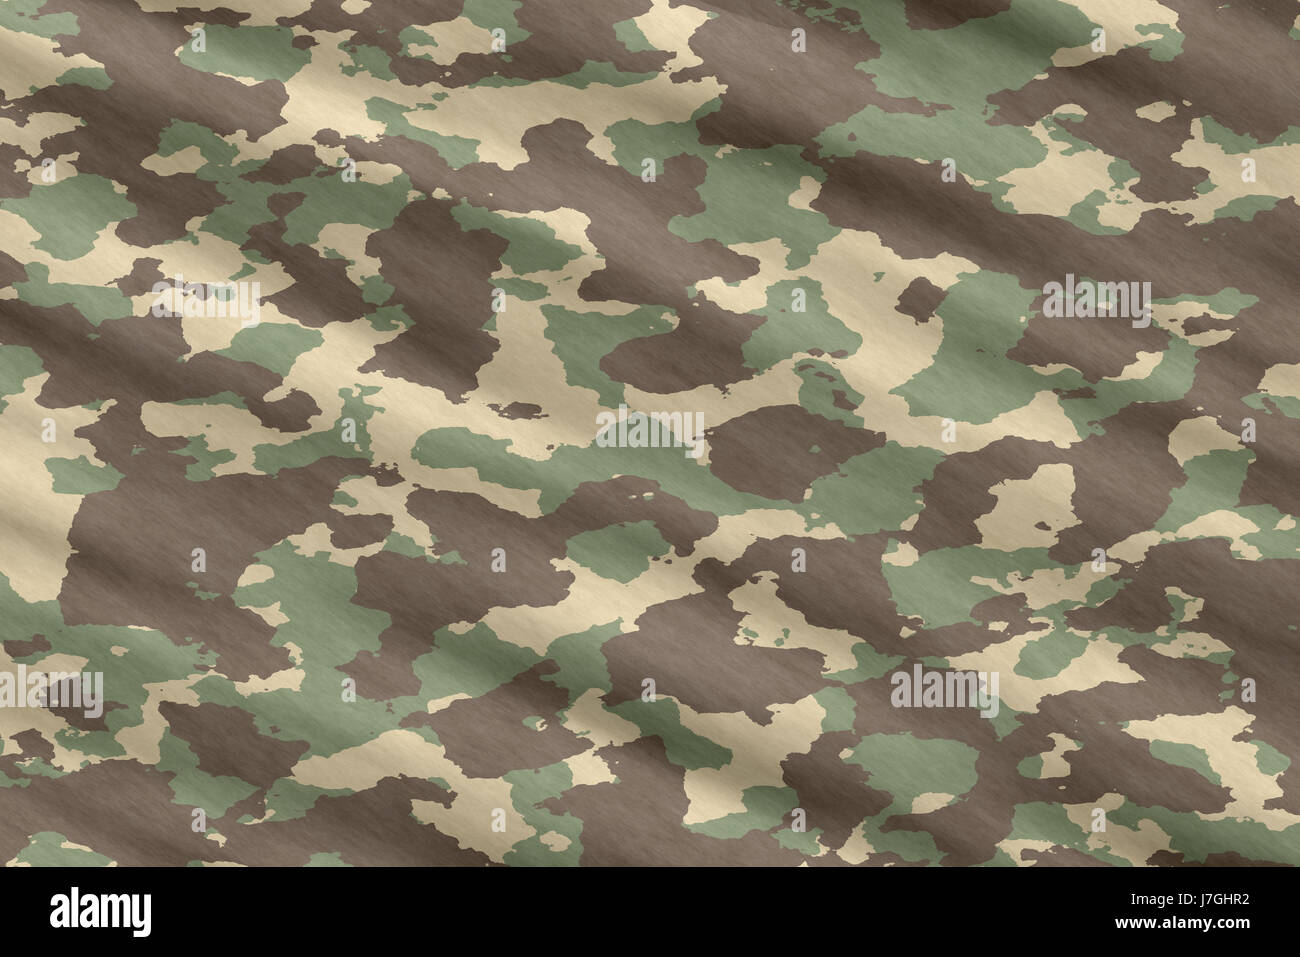 Soldato dell'esercito jungle hunt materiale illustrativo farmaco anestetico farmaco dipendenza Foto Stock